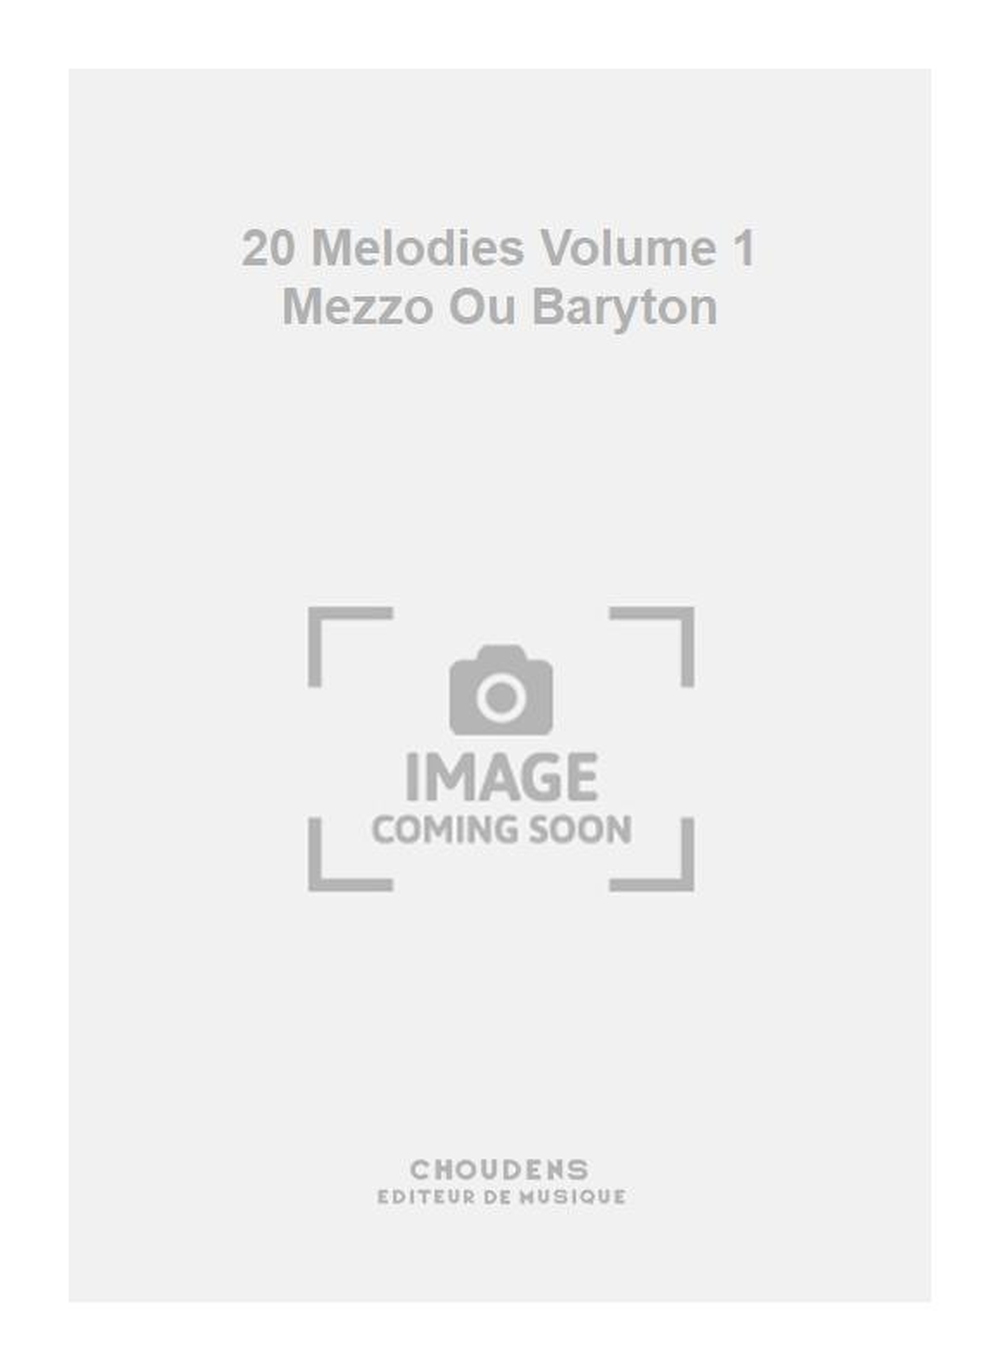 Charles Gounod: 20 Melodies Volume 1 Mezzo Ou Baryton